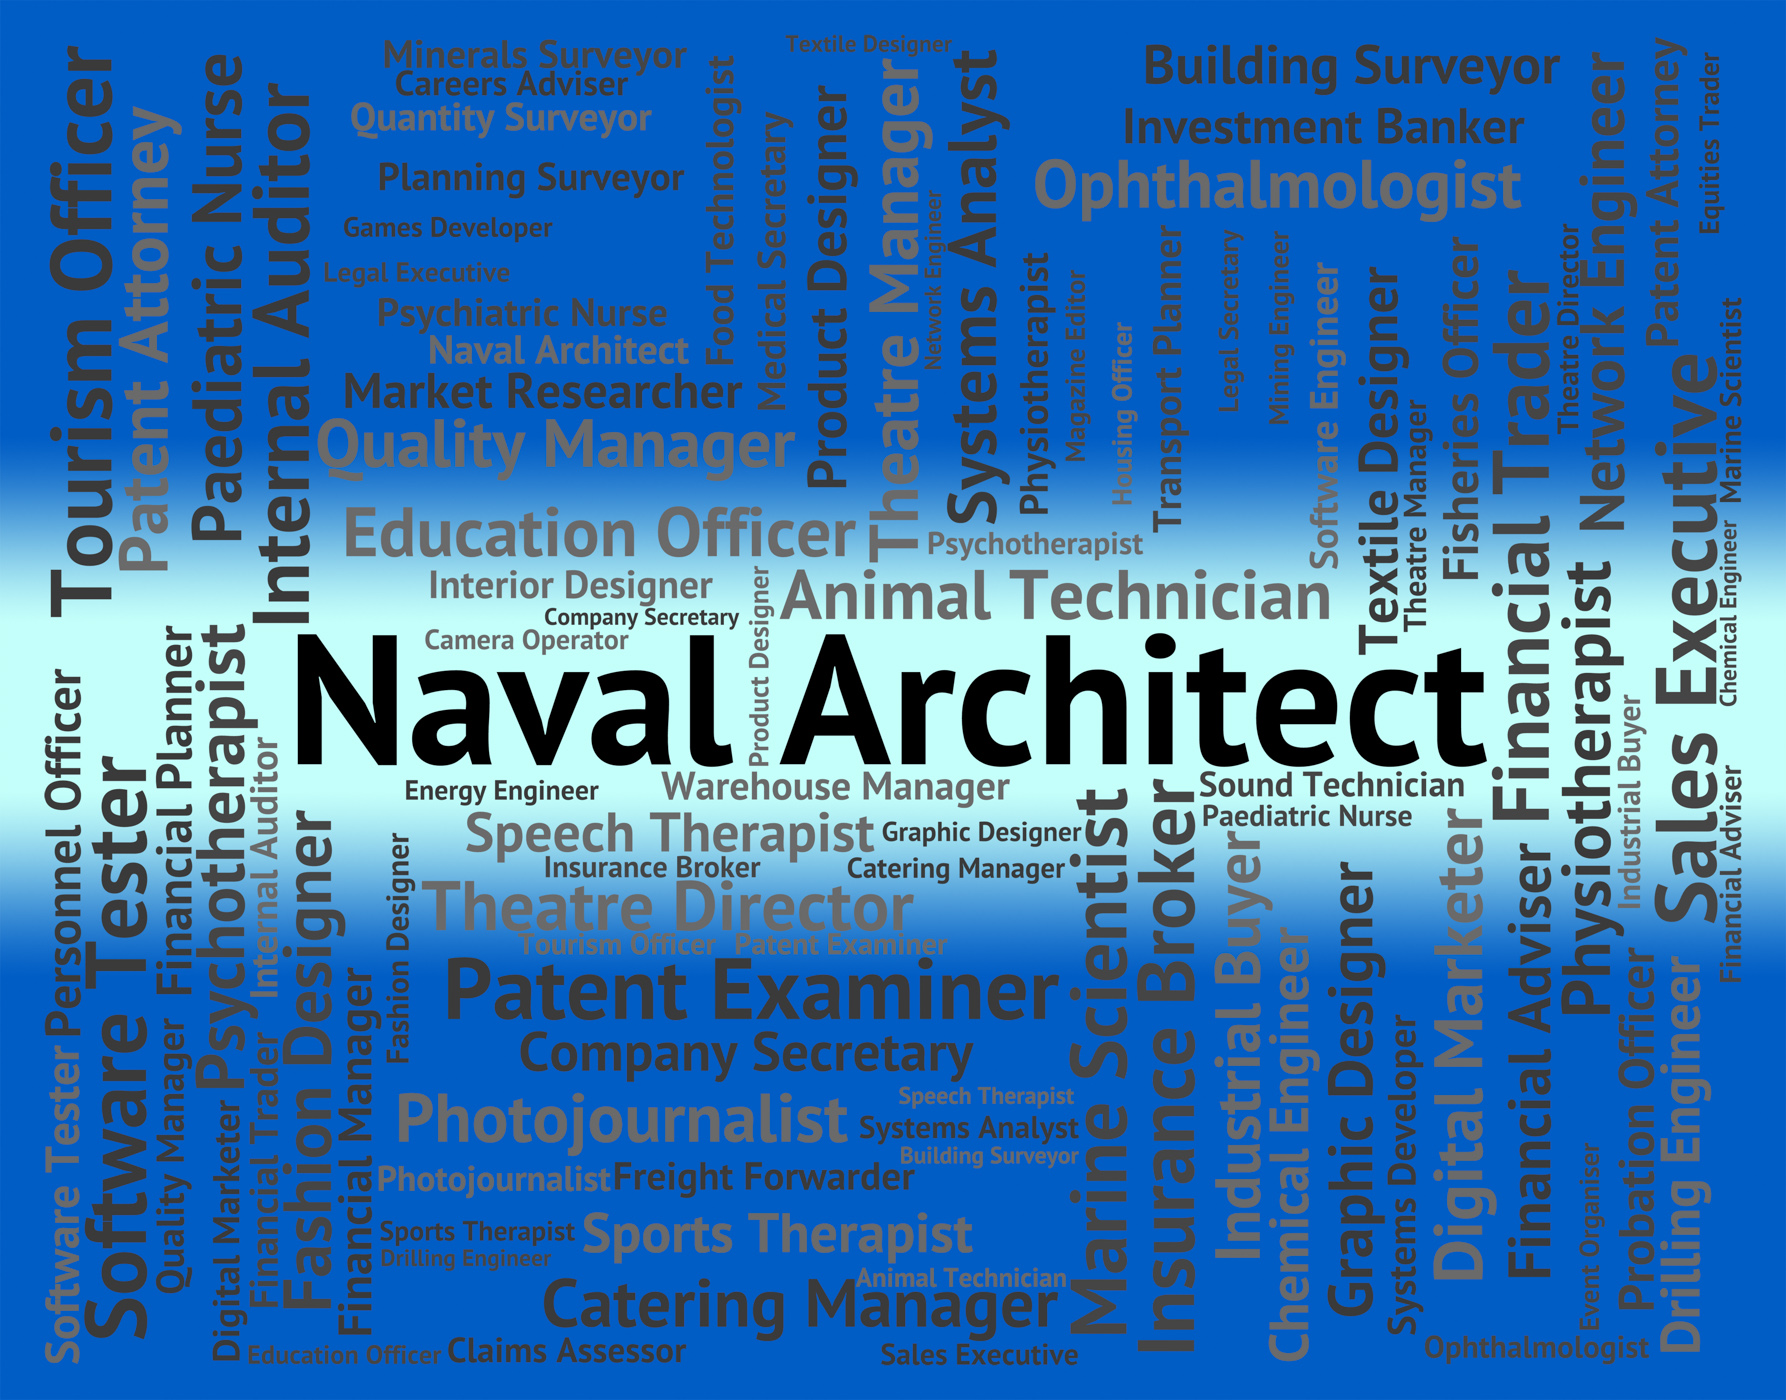 Naval architect indicates building consultant and aquatic photo